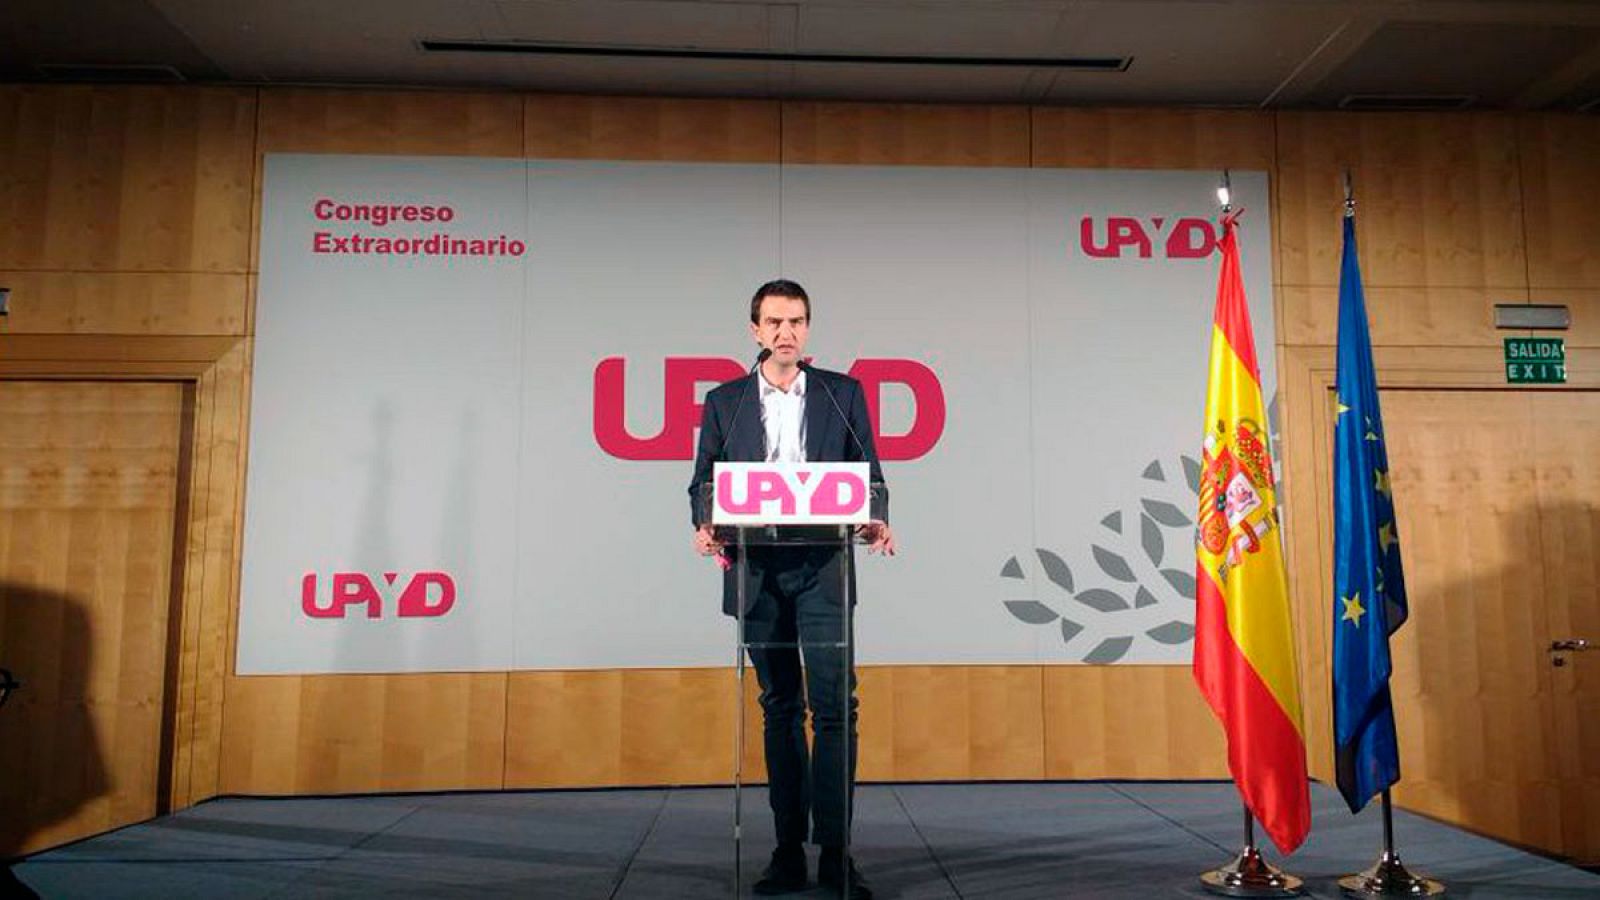 Gorka Maneiro elegido nuevo portavoz de UPyD interviene ante el Congreso extraordinario del partido